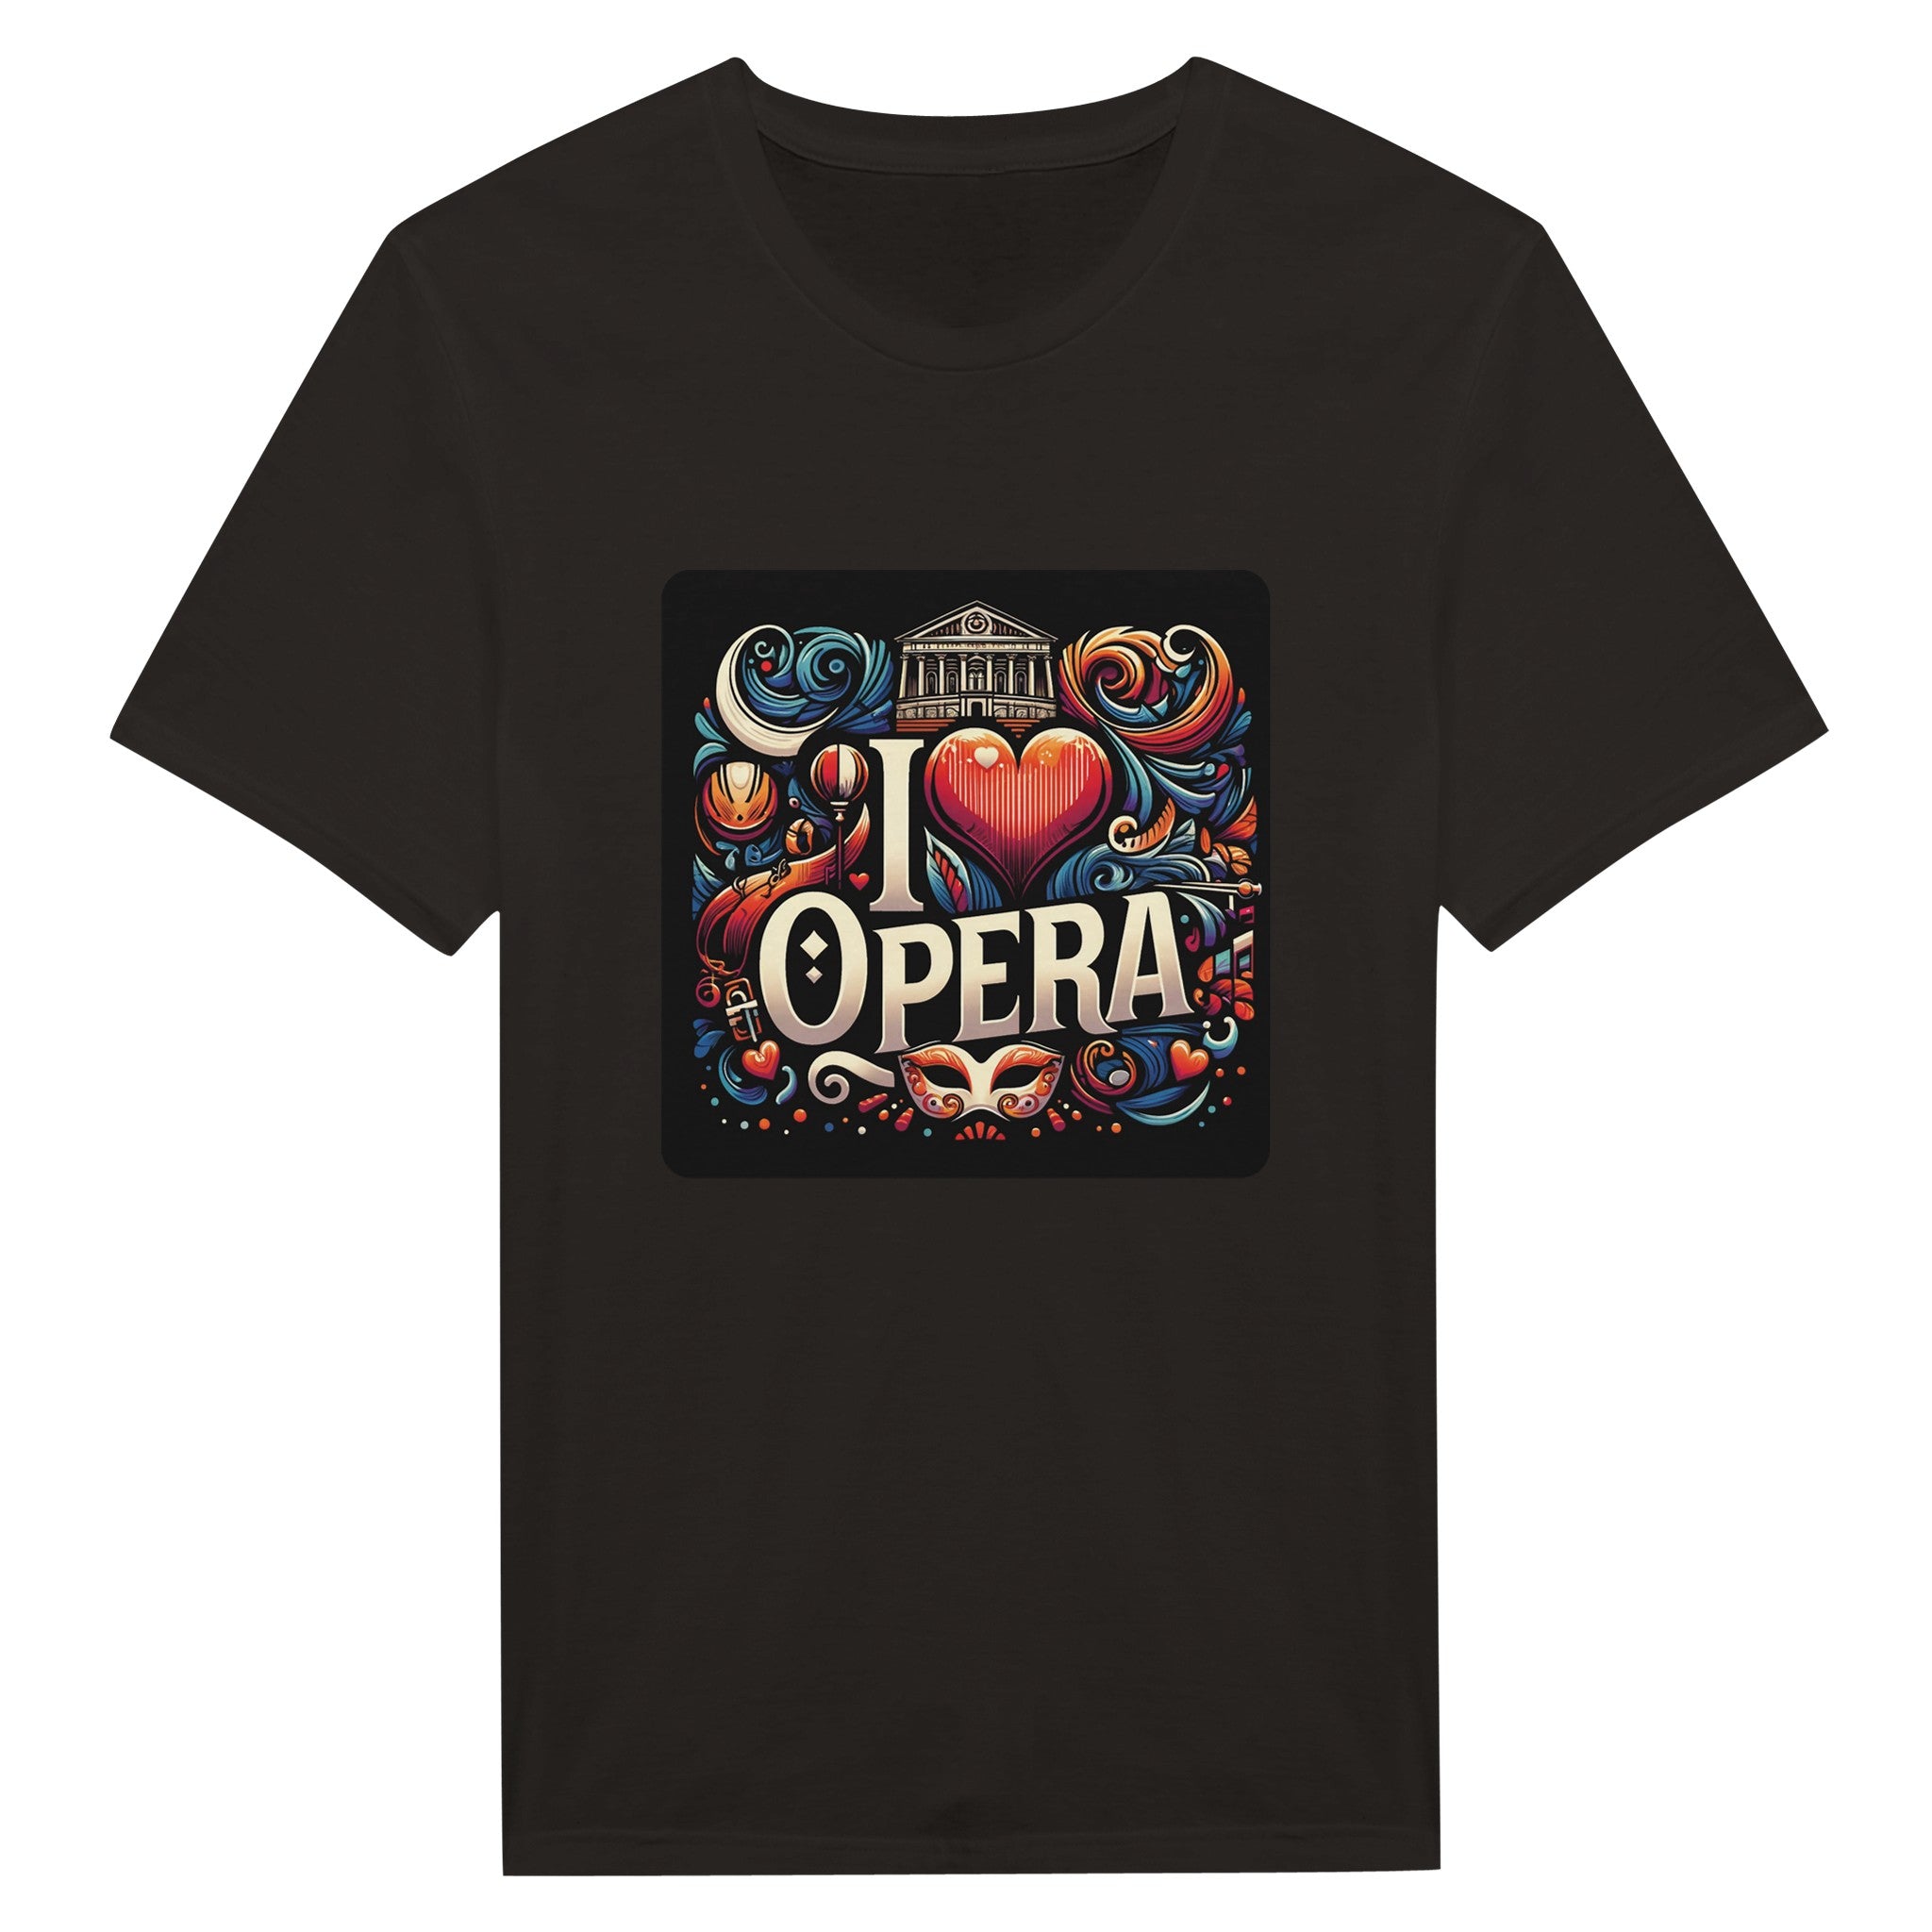 "I love Opera" Klassisk unisex t-shirt med rund hals